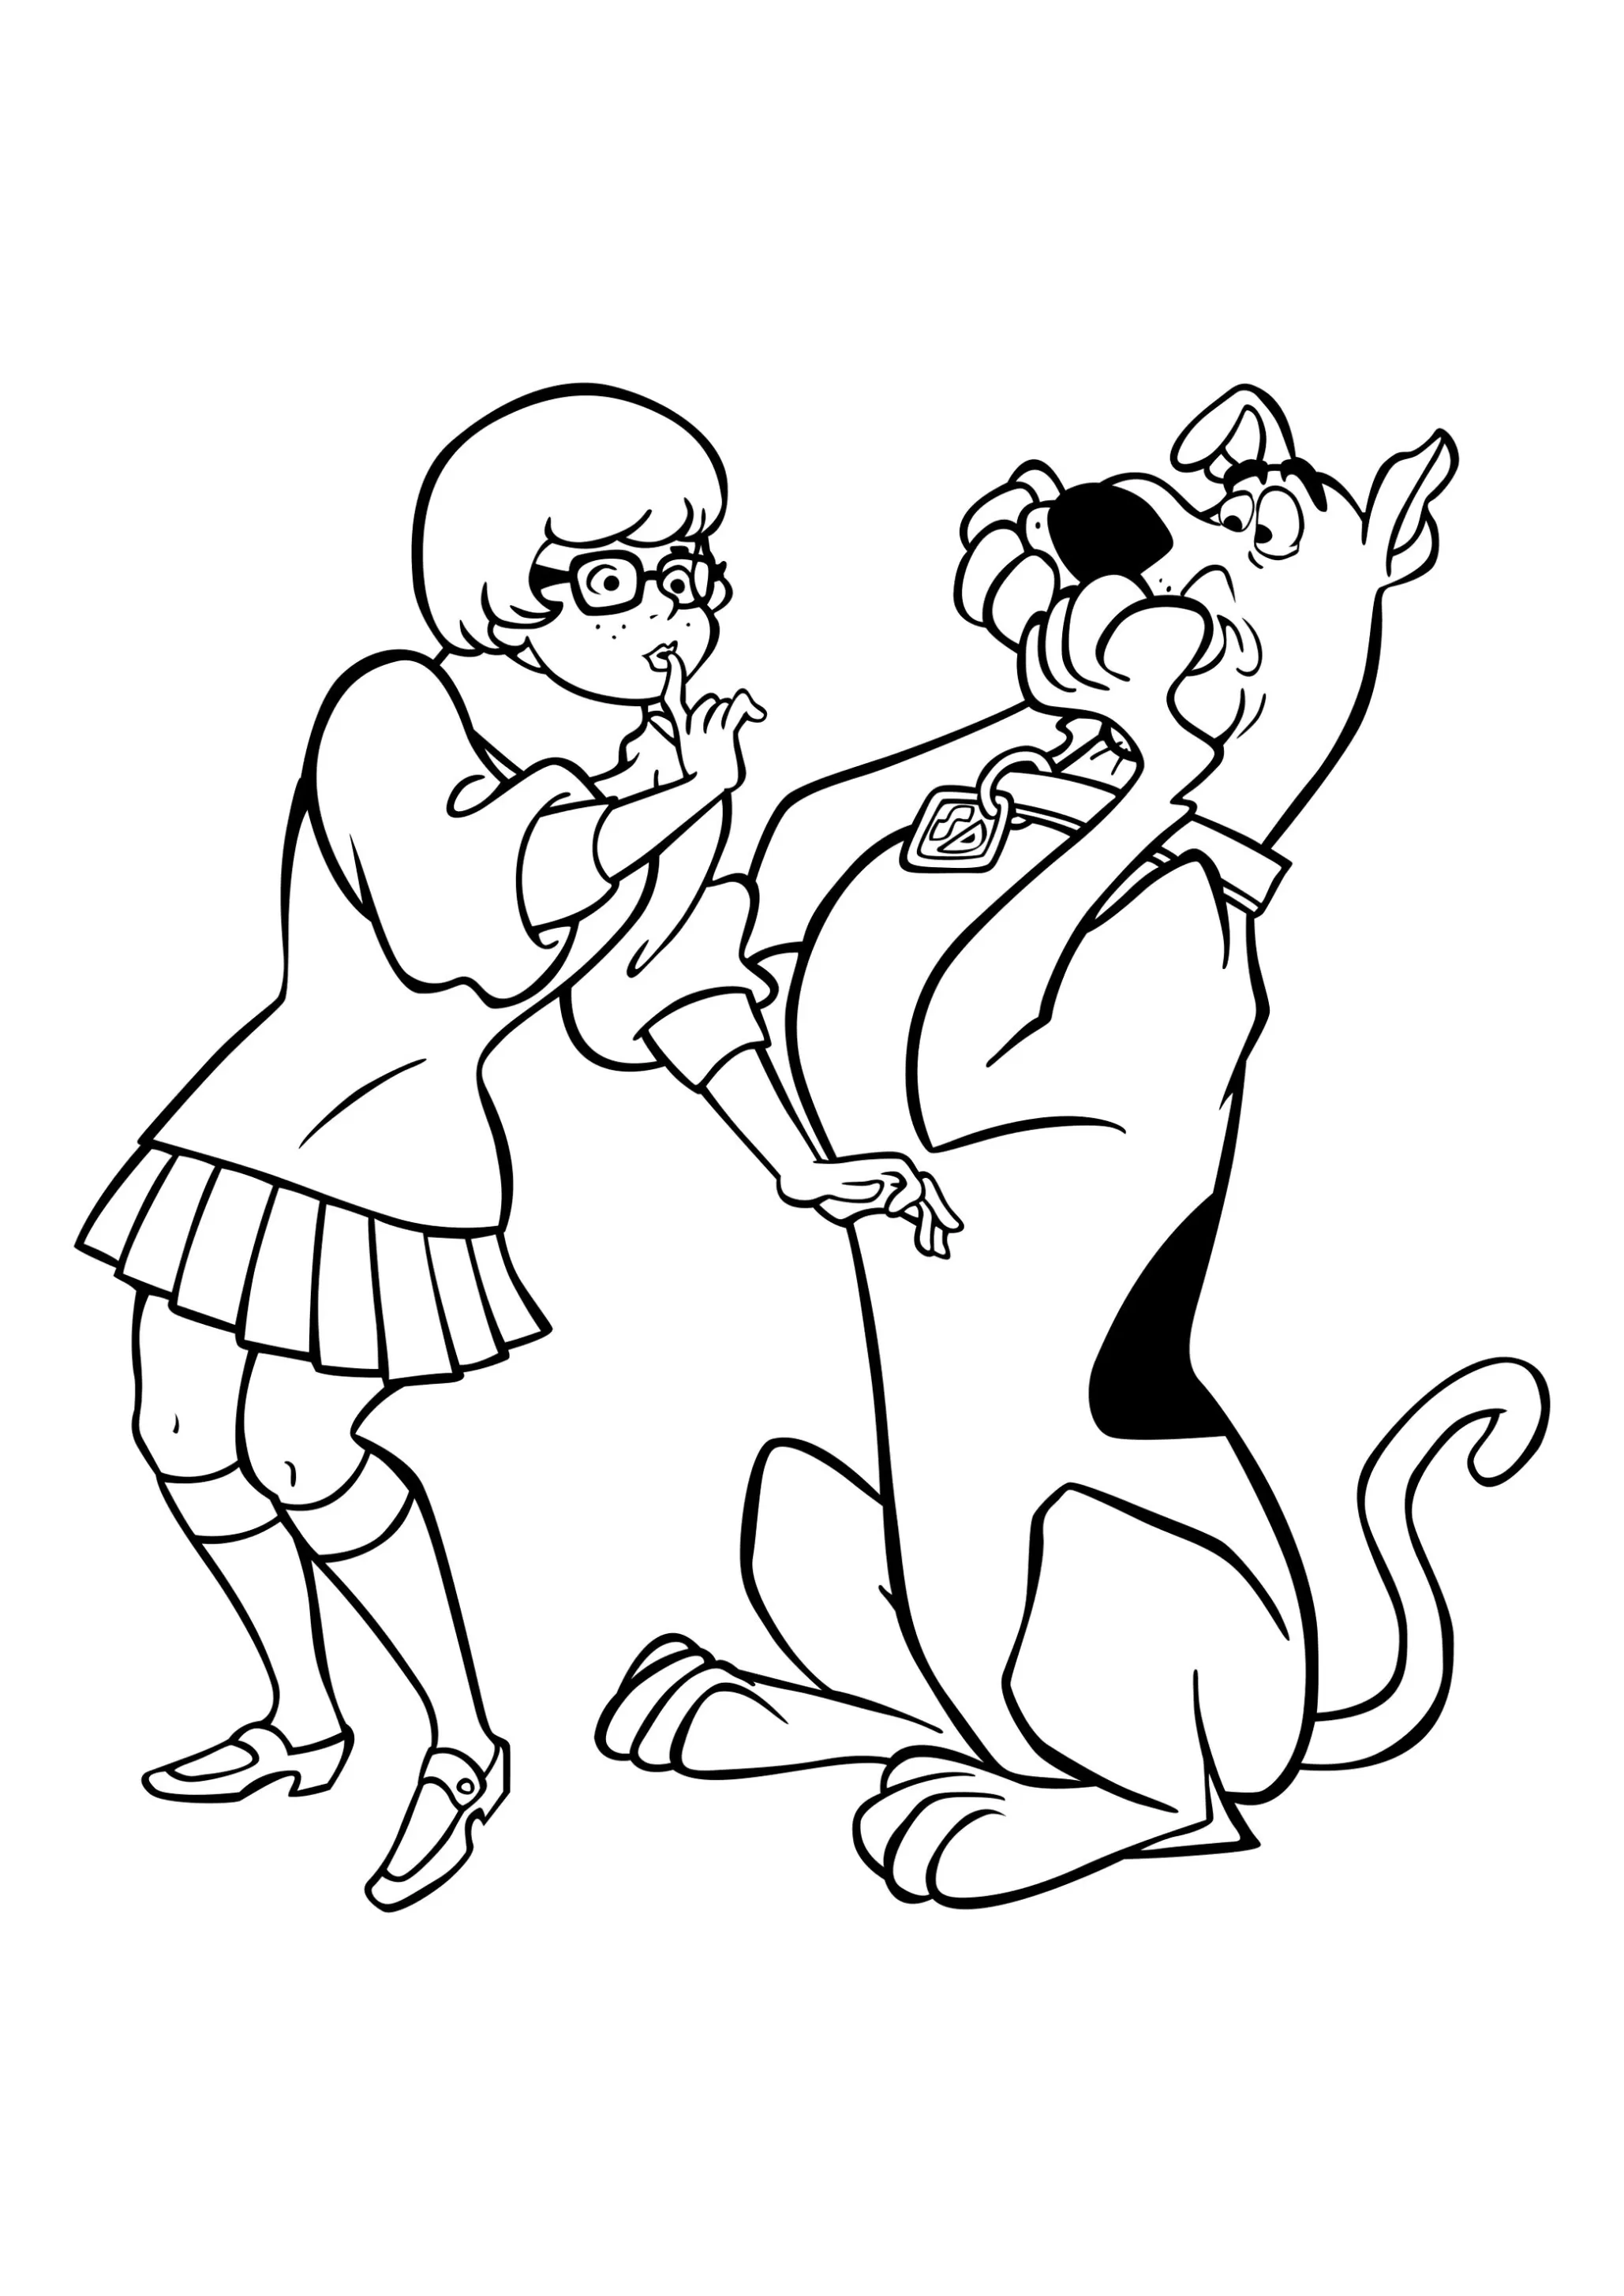 Velma e Scooby para pintar e colorir